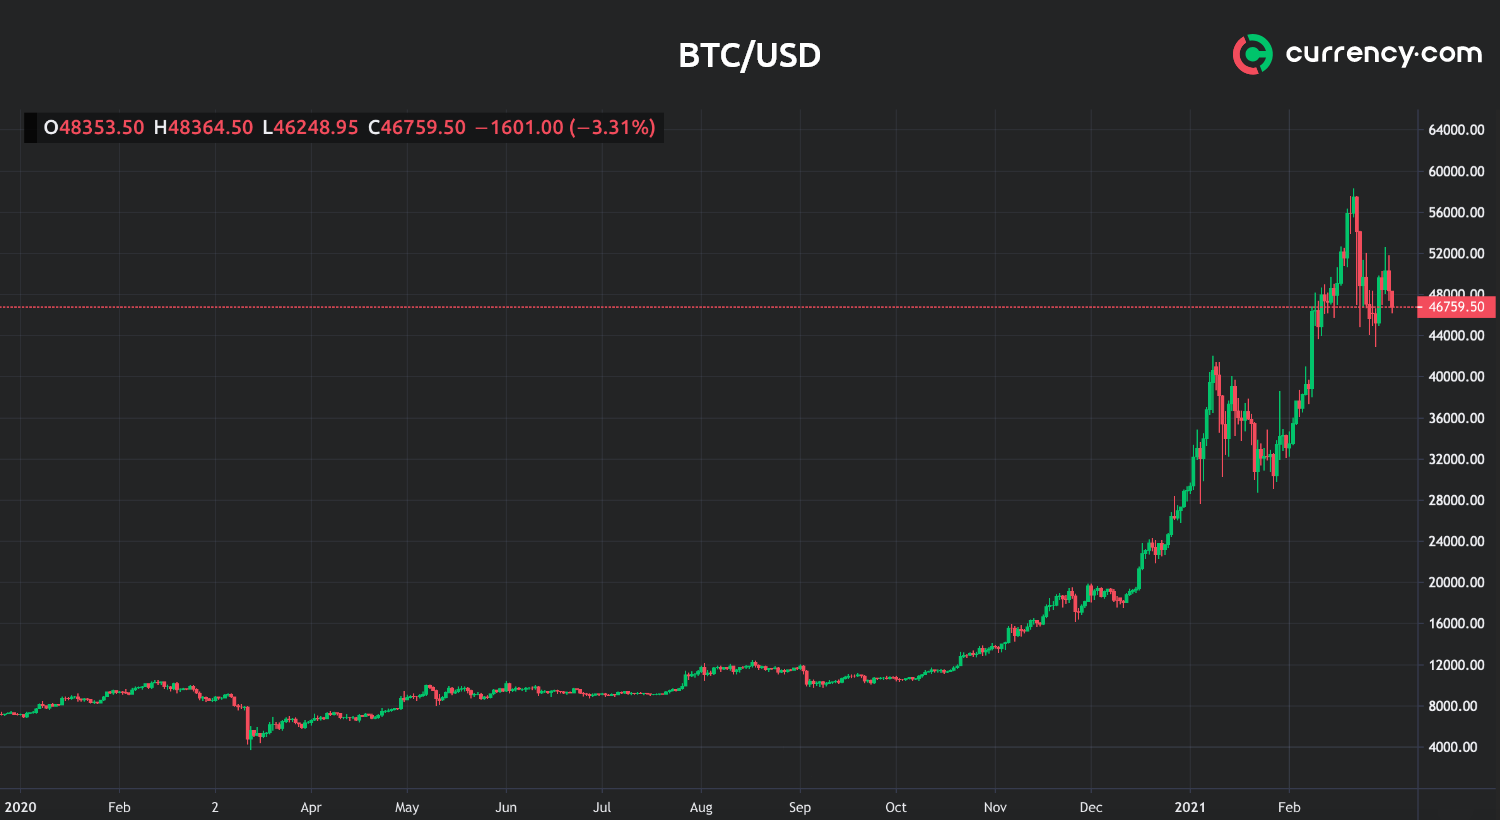 bitcoin gold chart